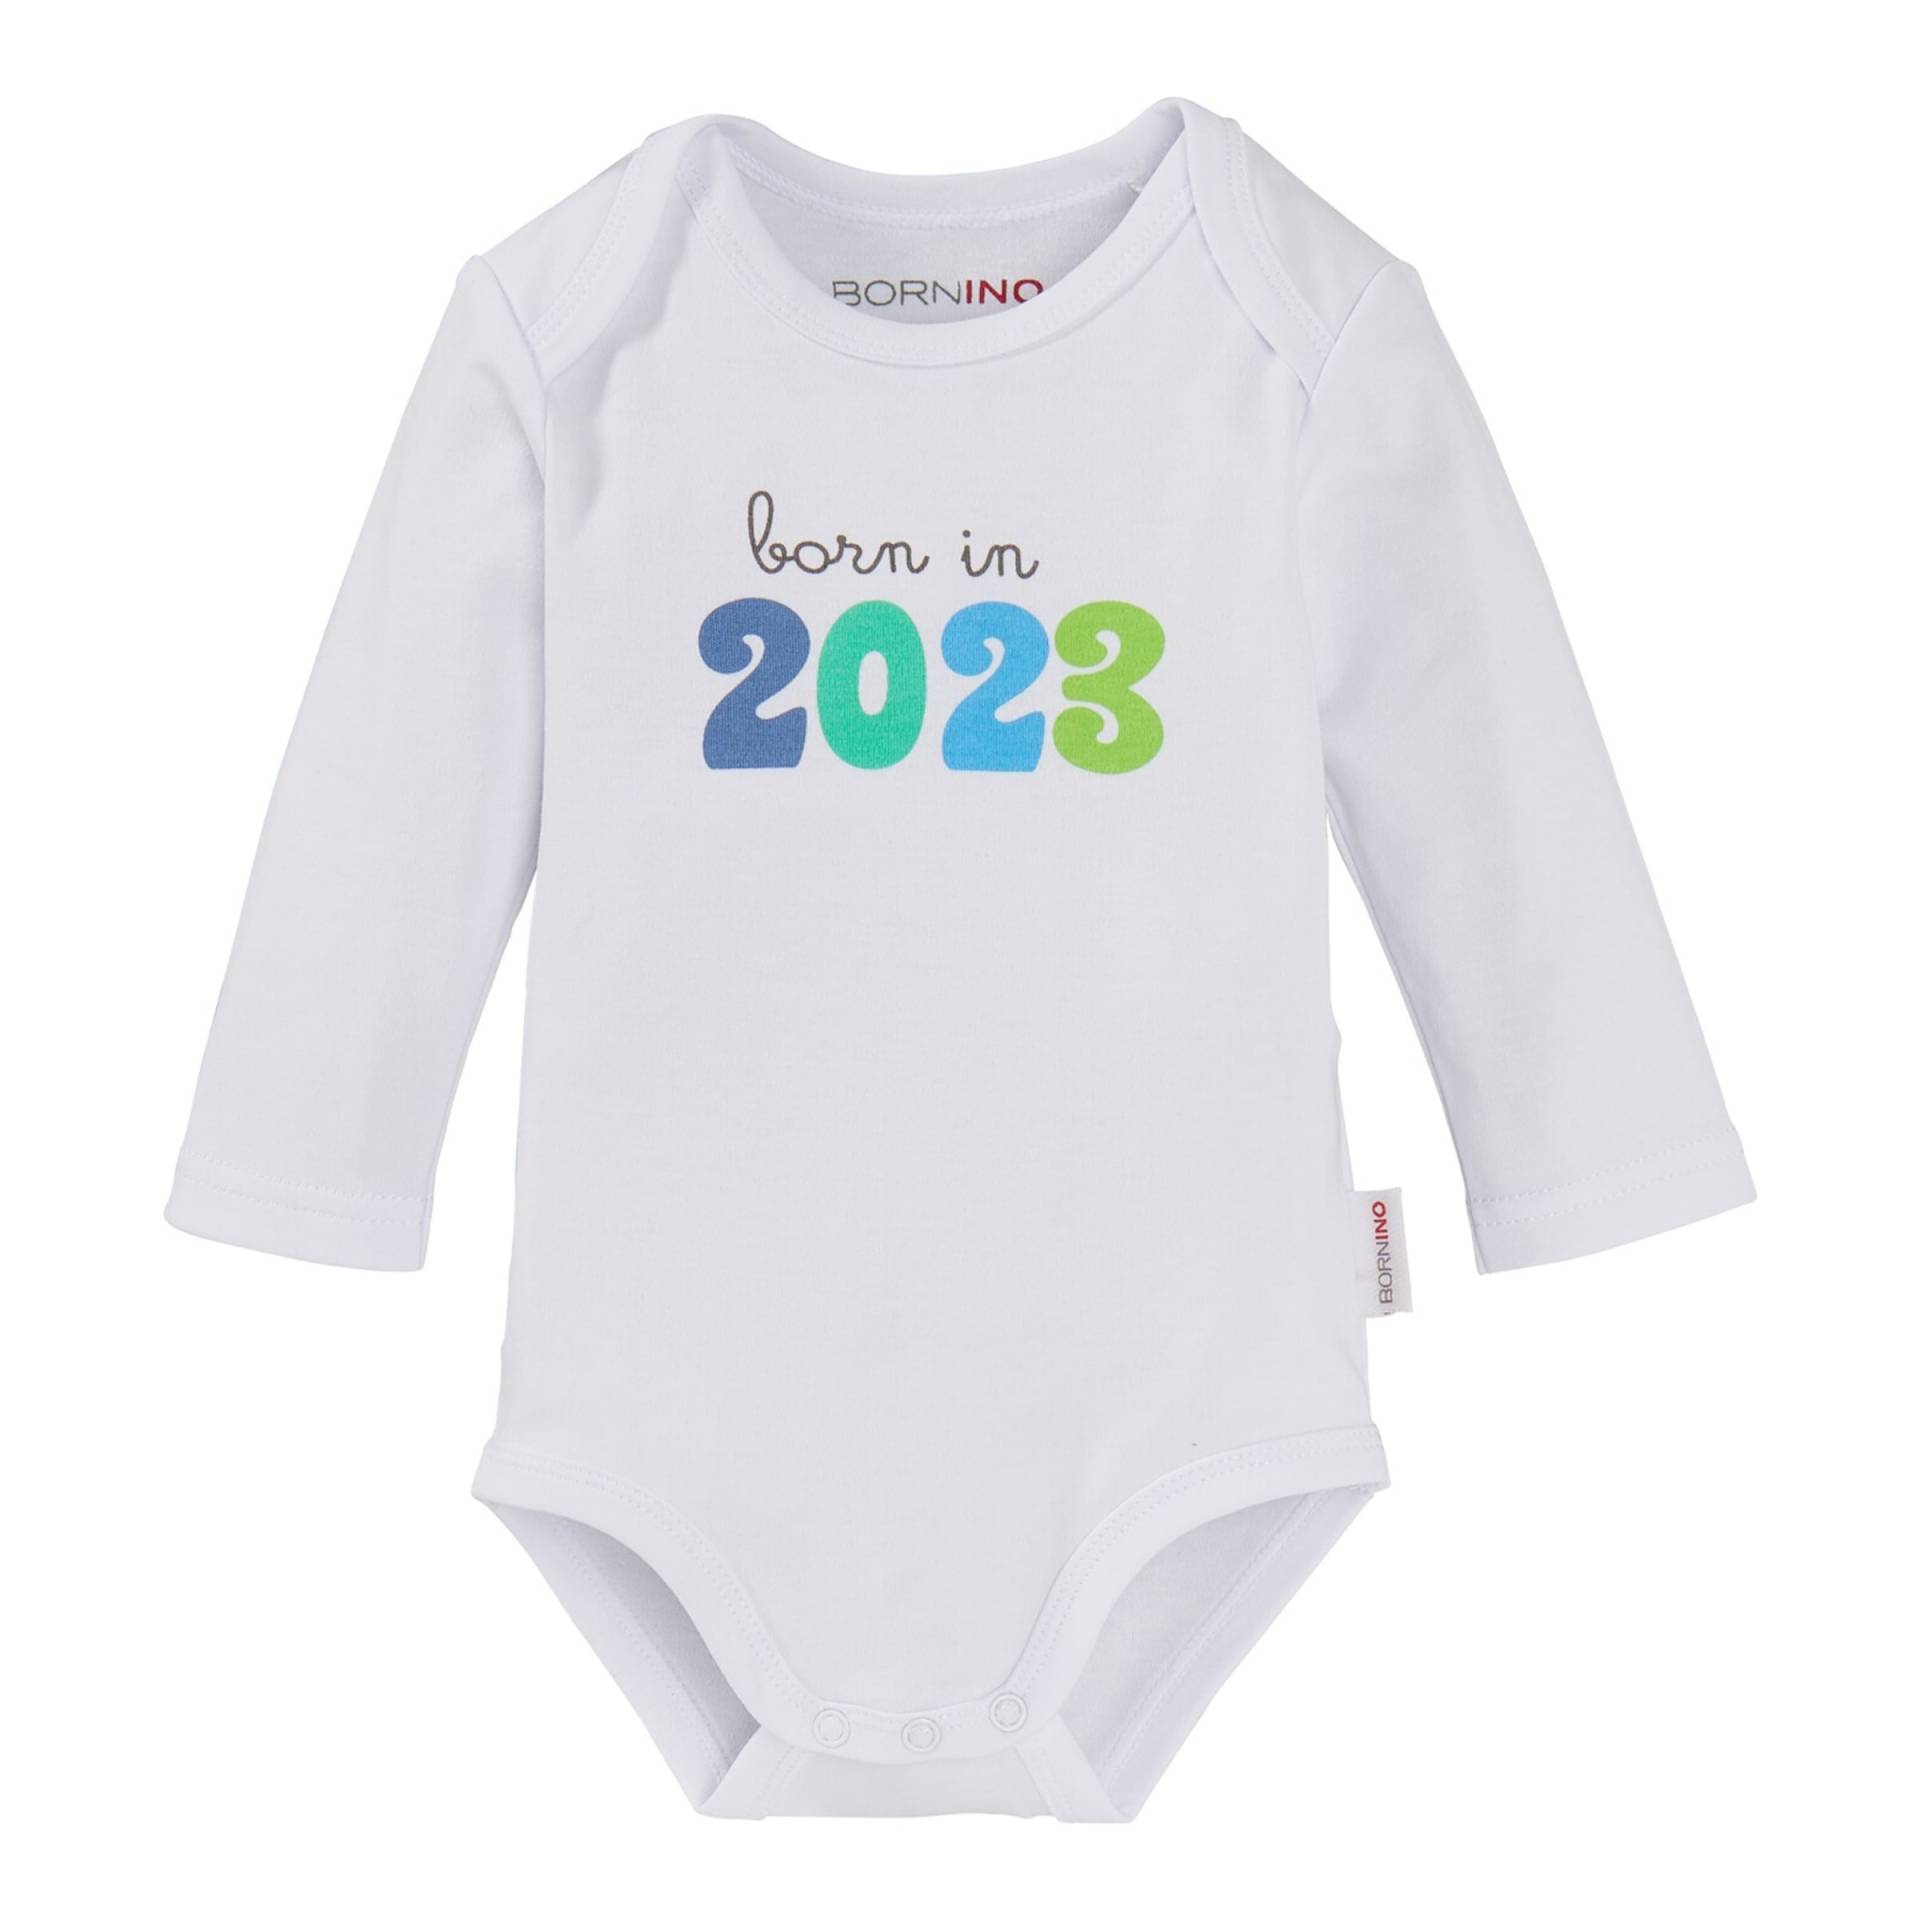 Sprüchebody langarm born in 2023 von Bornino